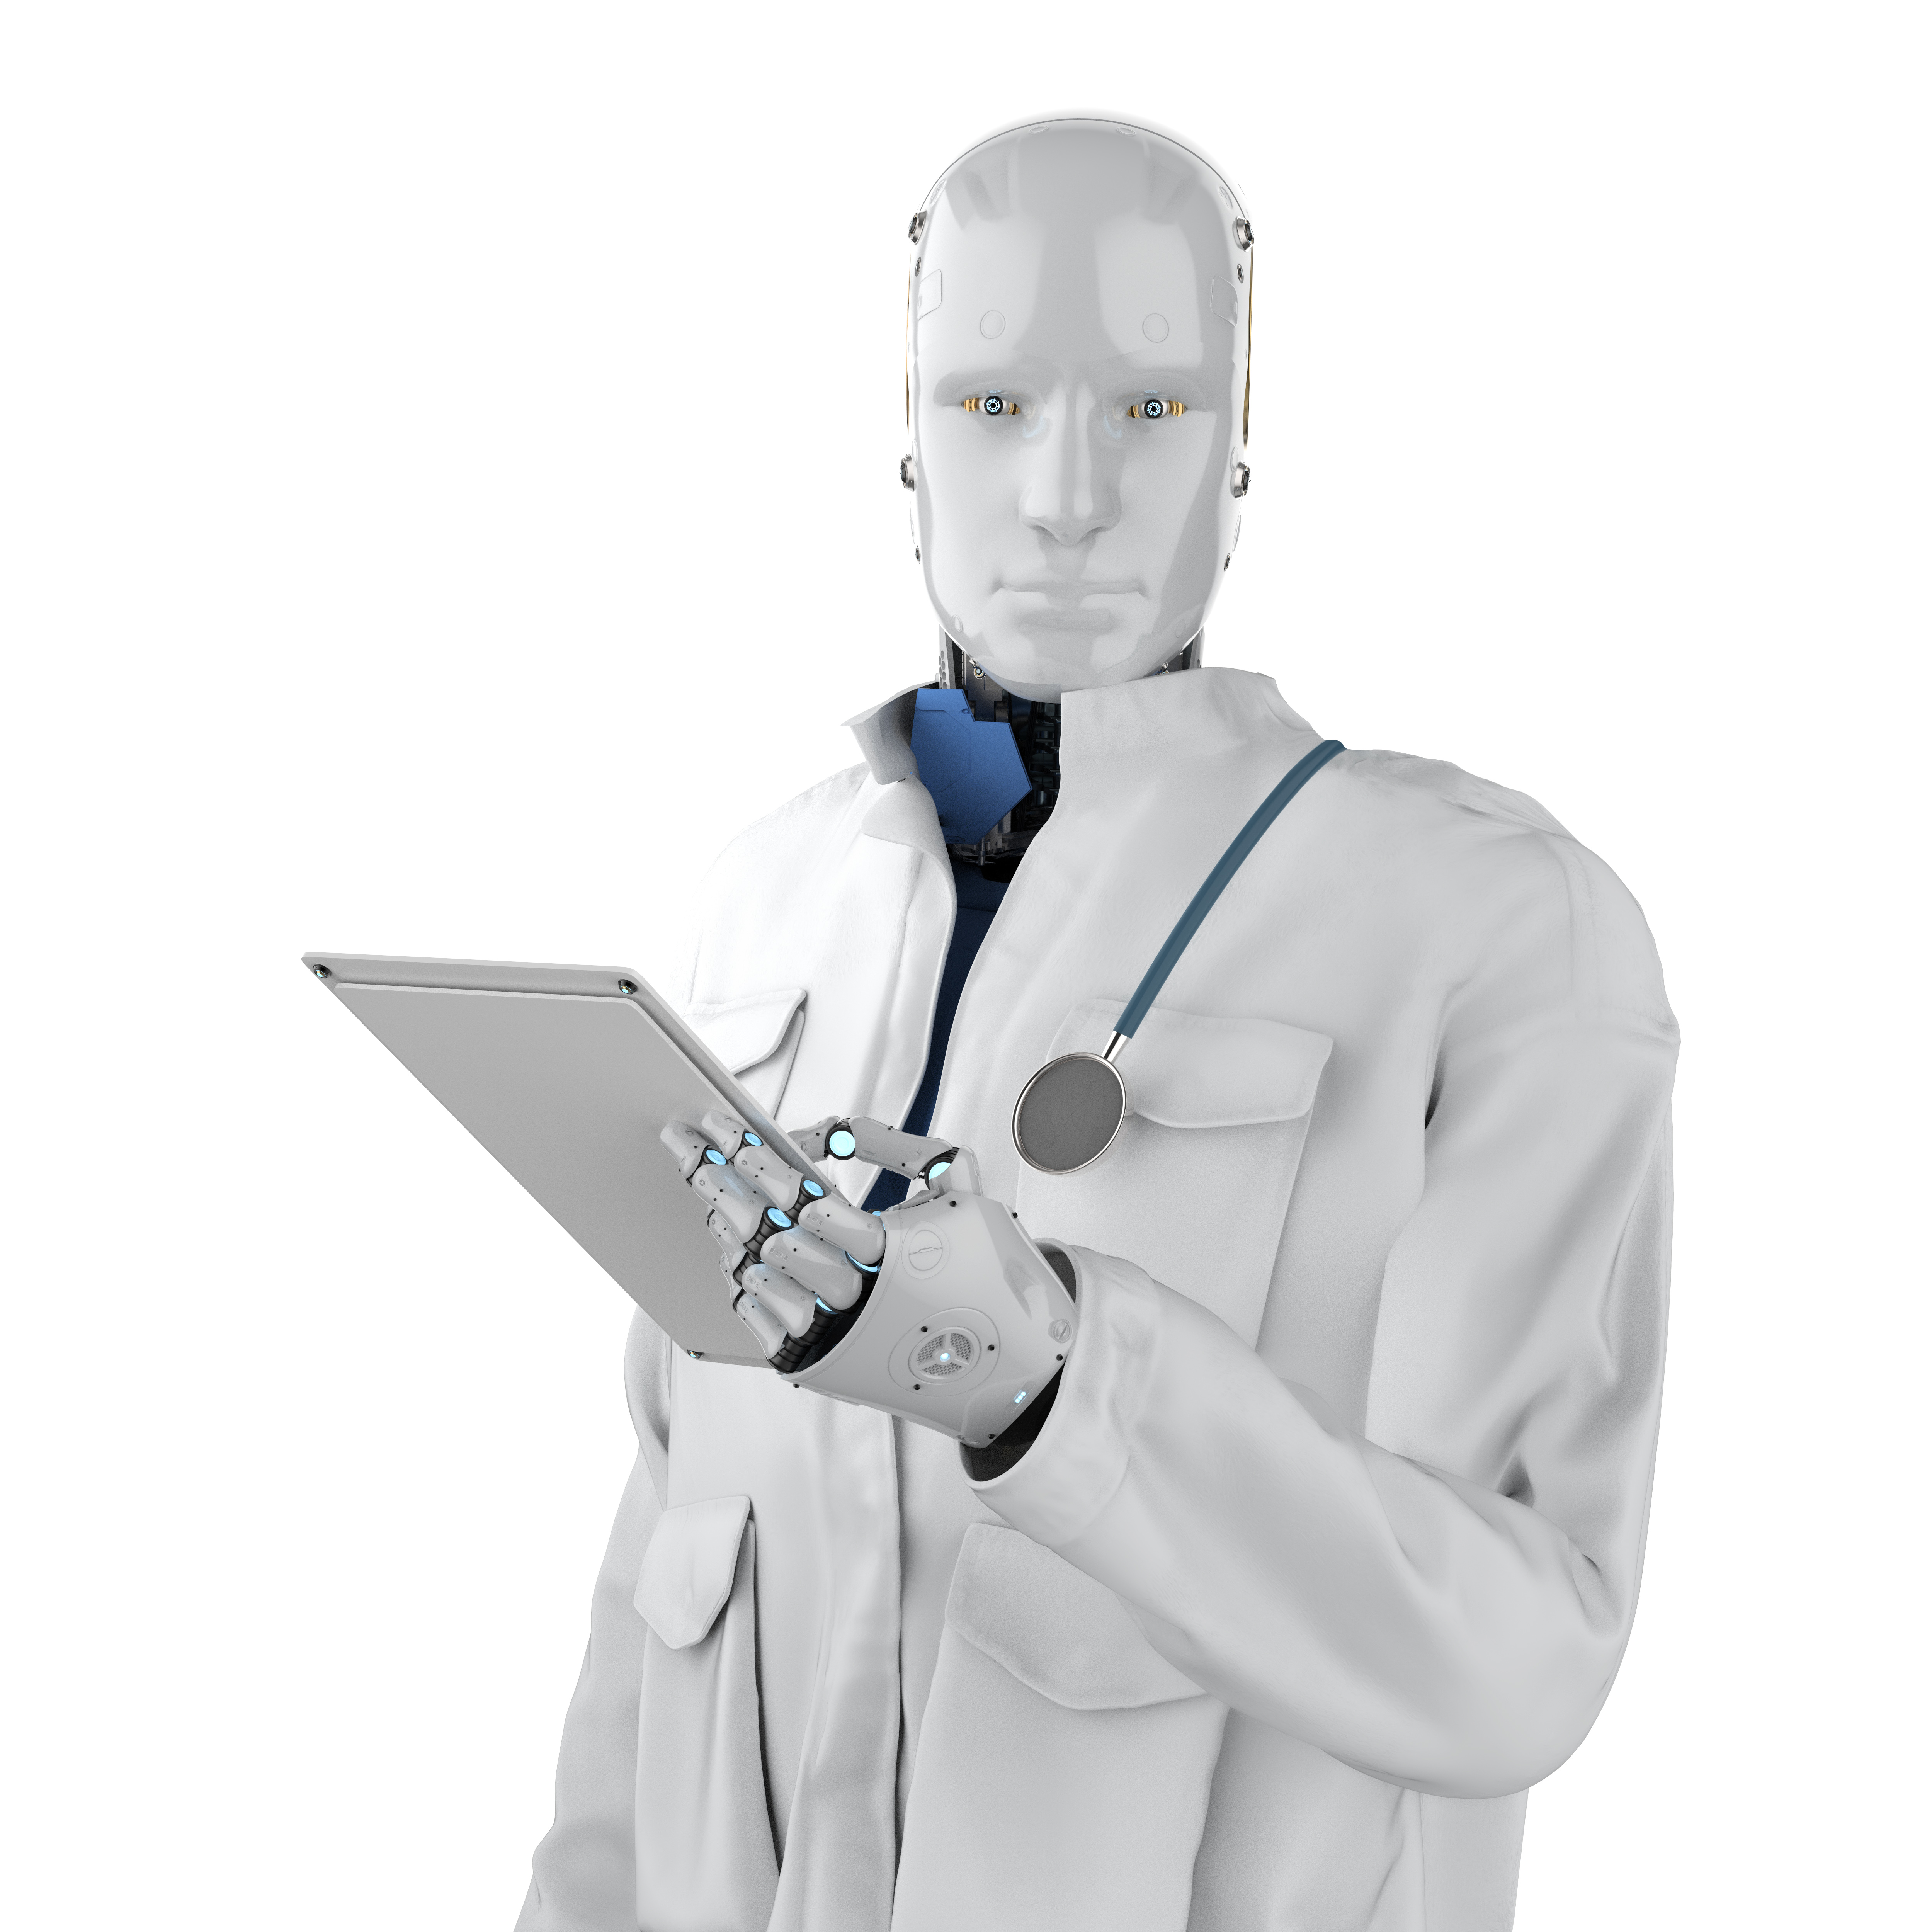 Robo-Doctors: Transforming the Healthcare